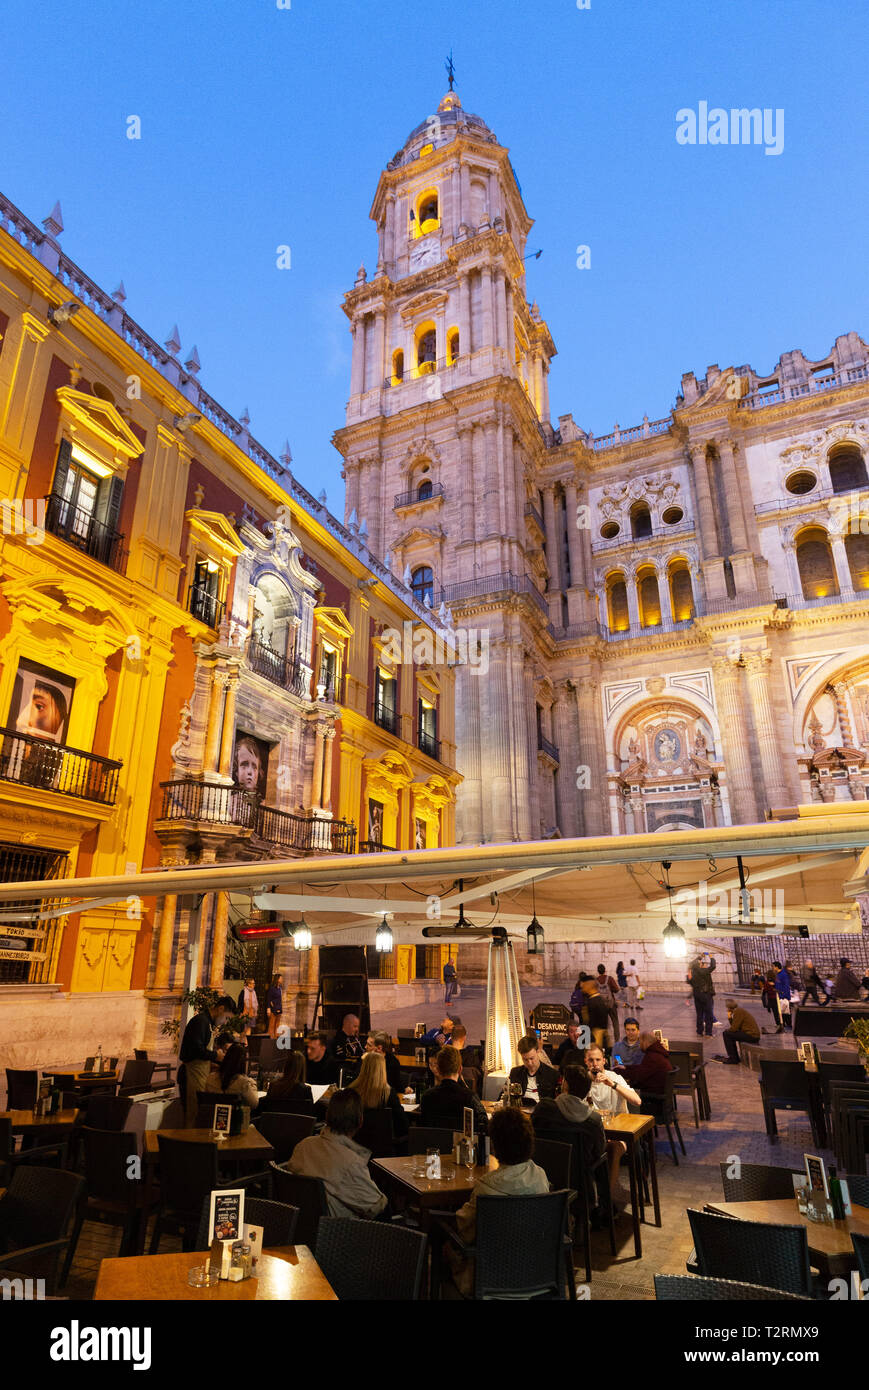 Cattedrale di Malaga e il Palazzo dei Vescovi è illuminato di notte, visto dalla Plaza del Obispo, Malaga città vecchia, Andalusia Spagna Foto Stock